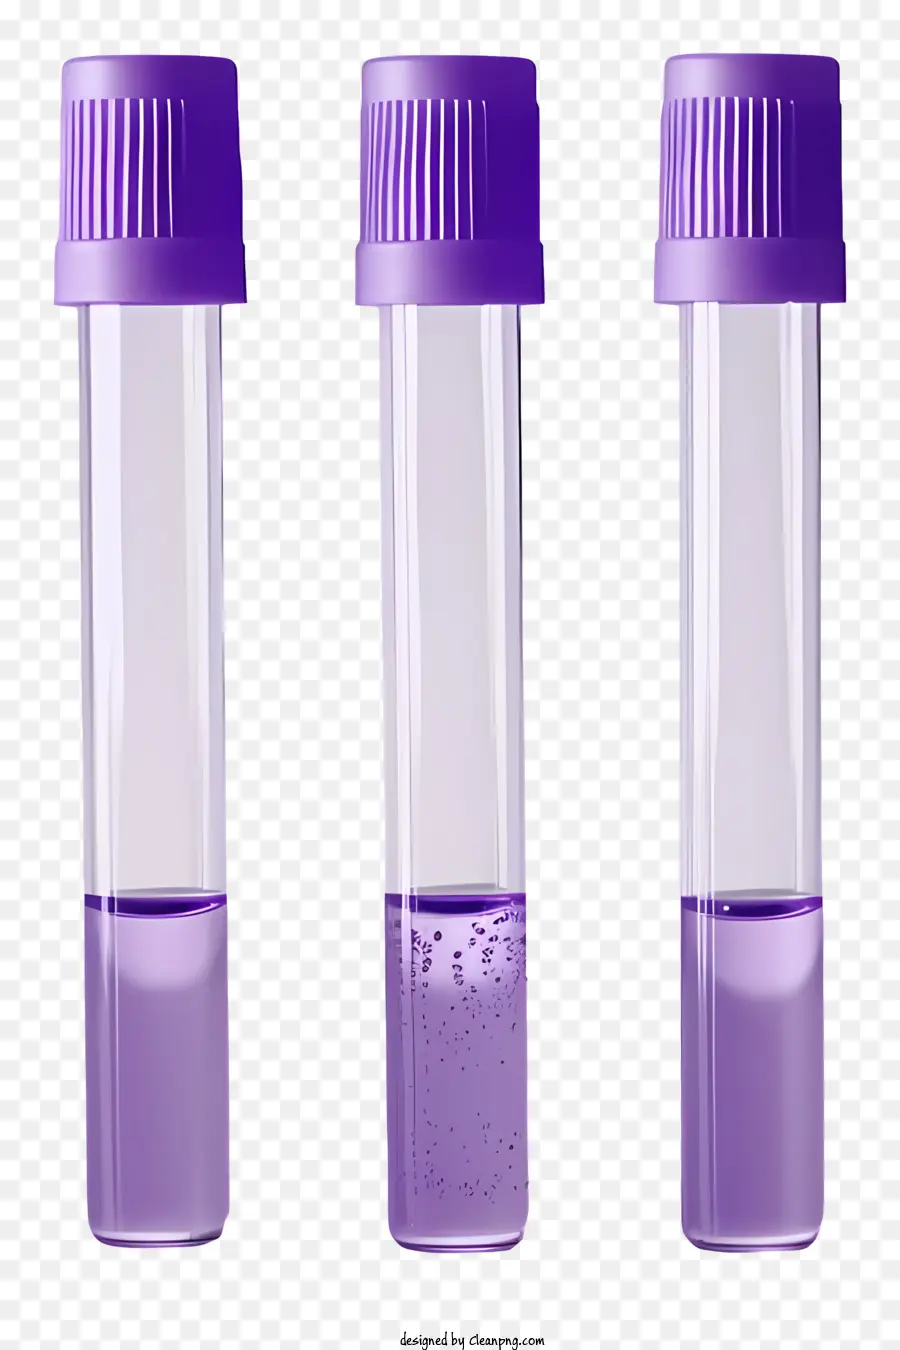 provette provette di vetro viola tubi pieni di liquido tubi colorati piccoli fori - 3 tubi di vetro viola riempiti di liquido colorato